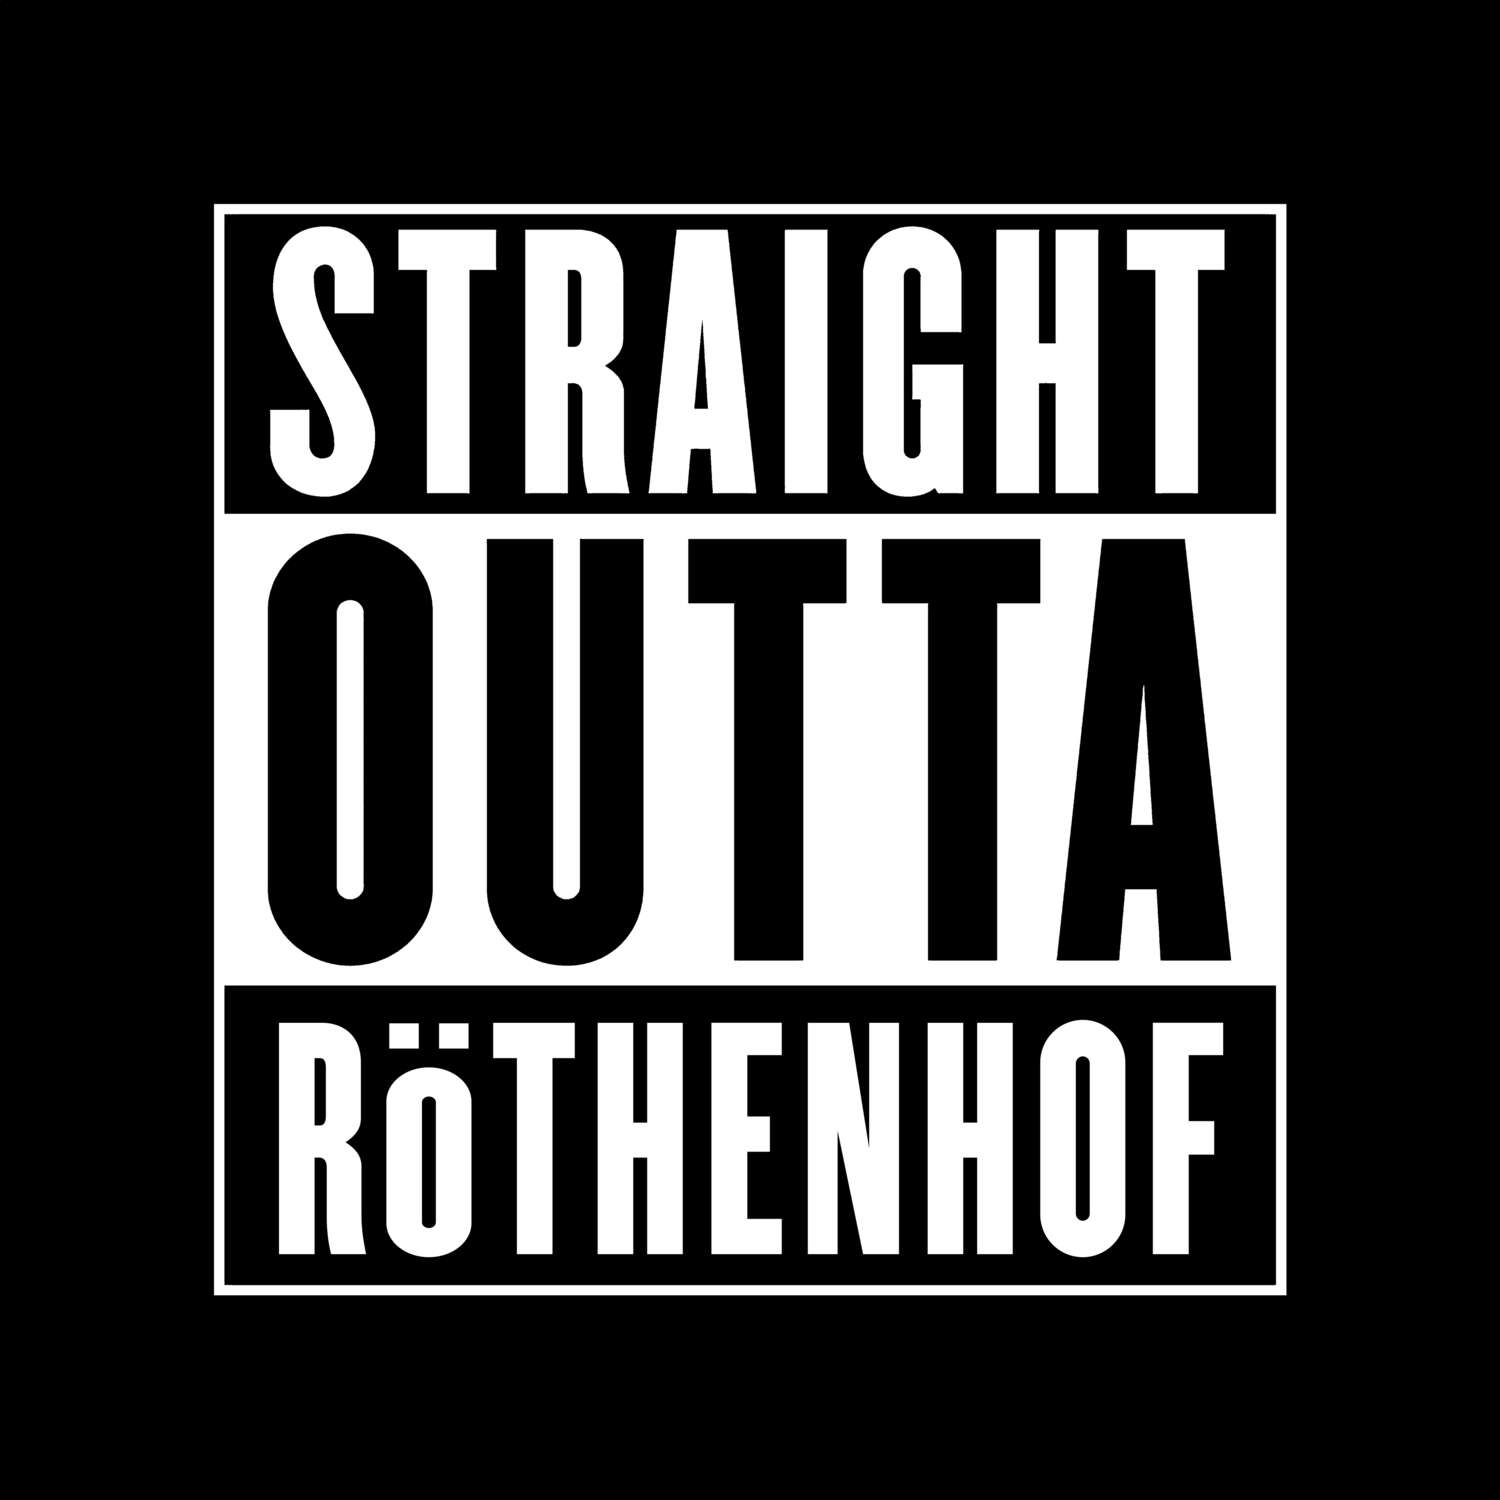 Röthenhof T-Shirt »Straight Outta«